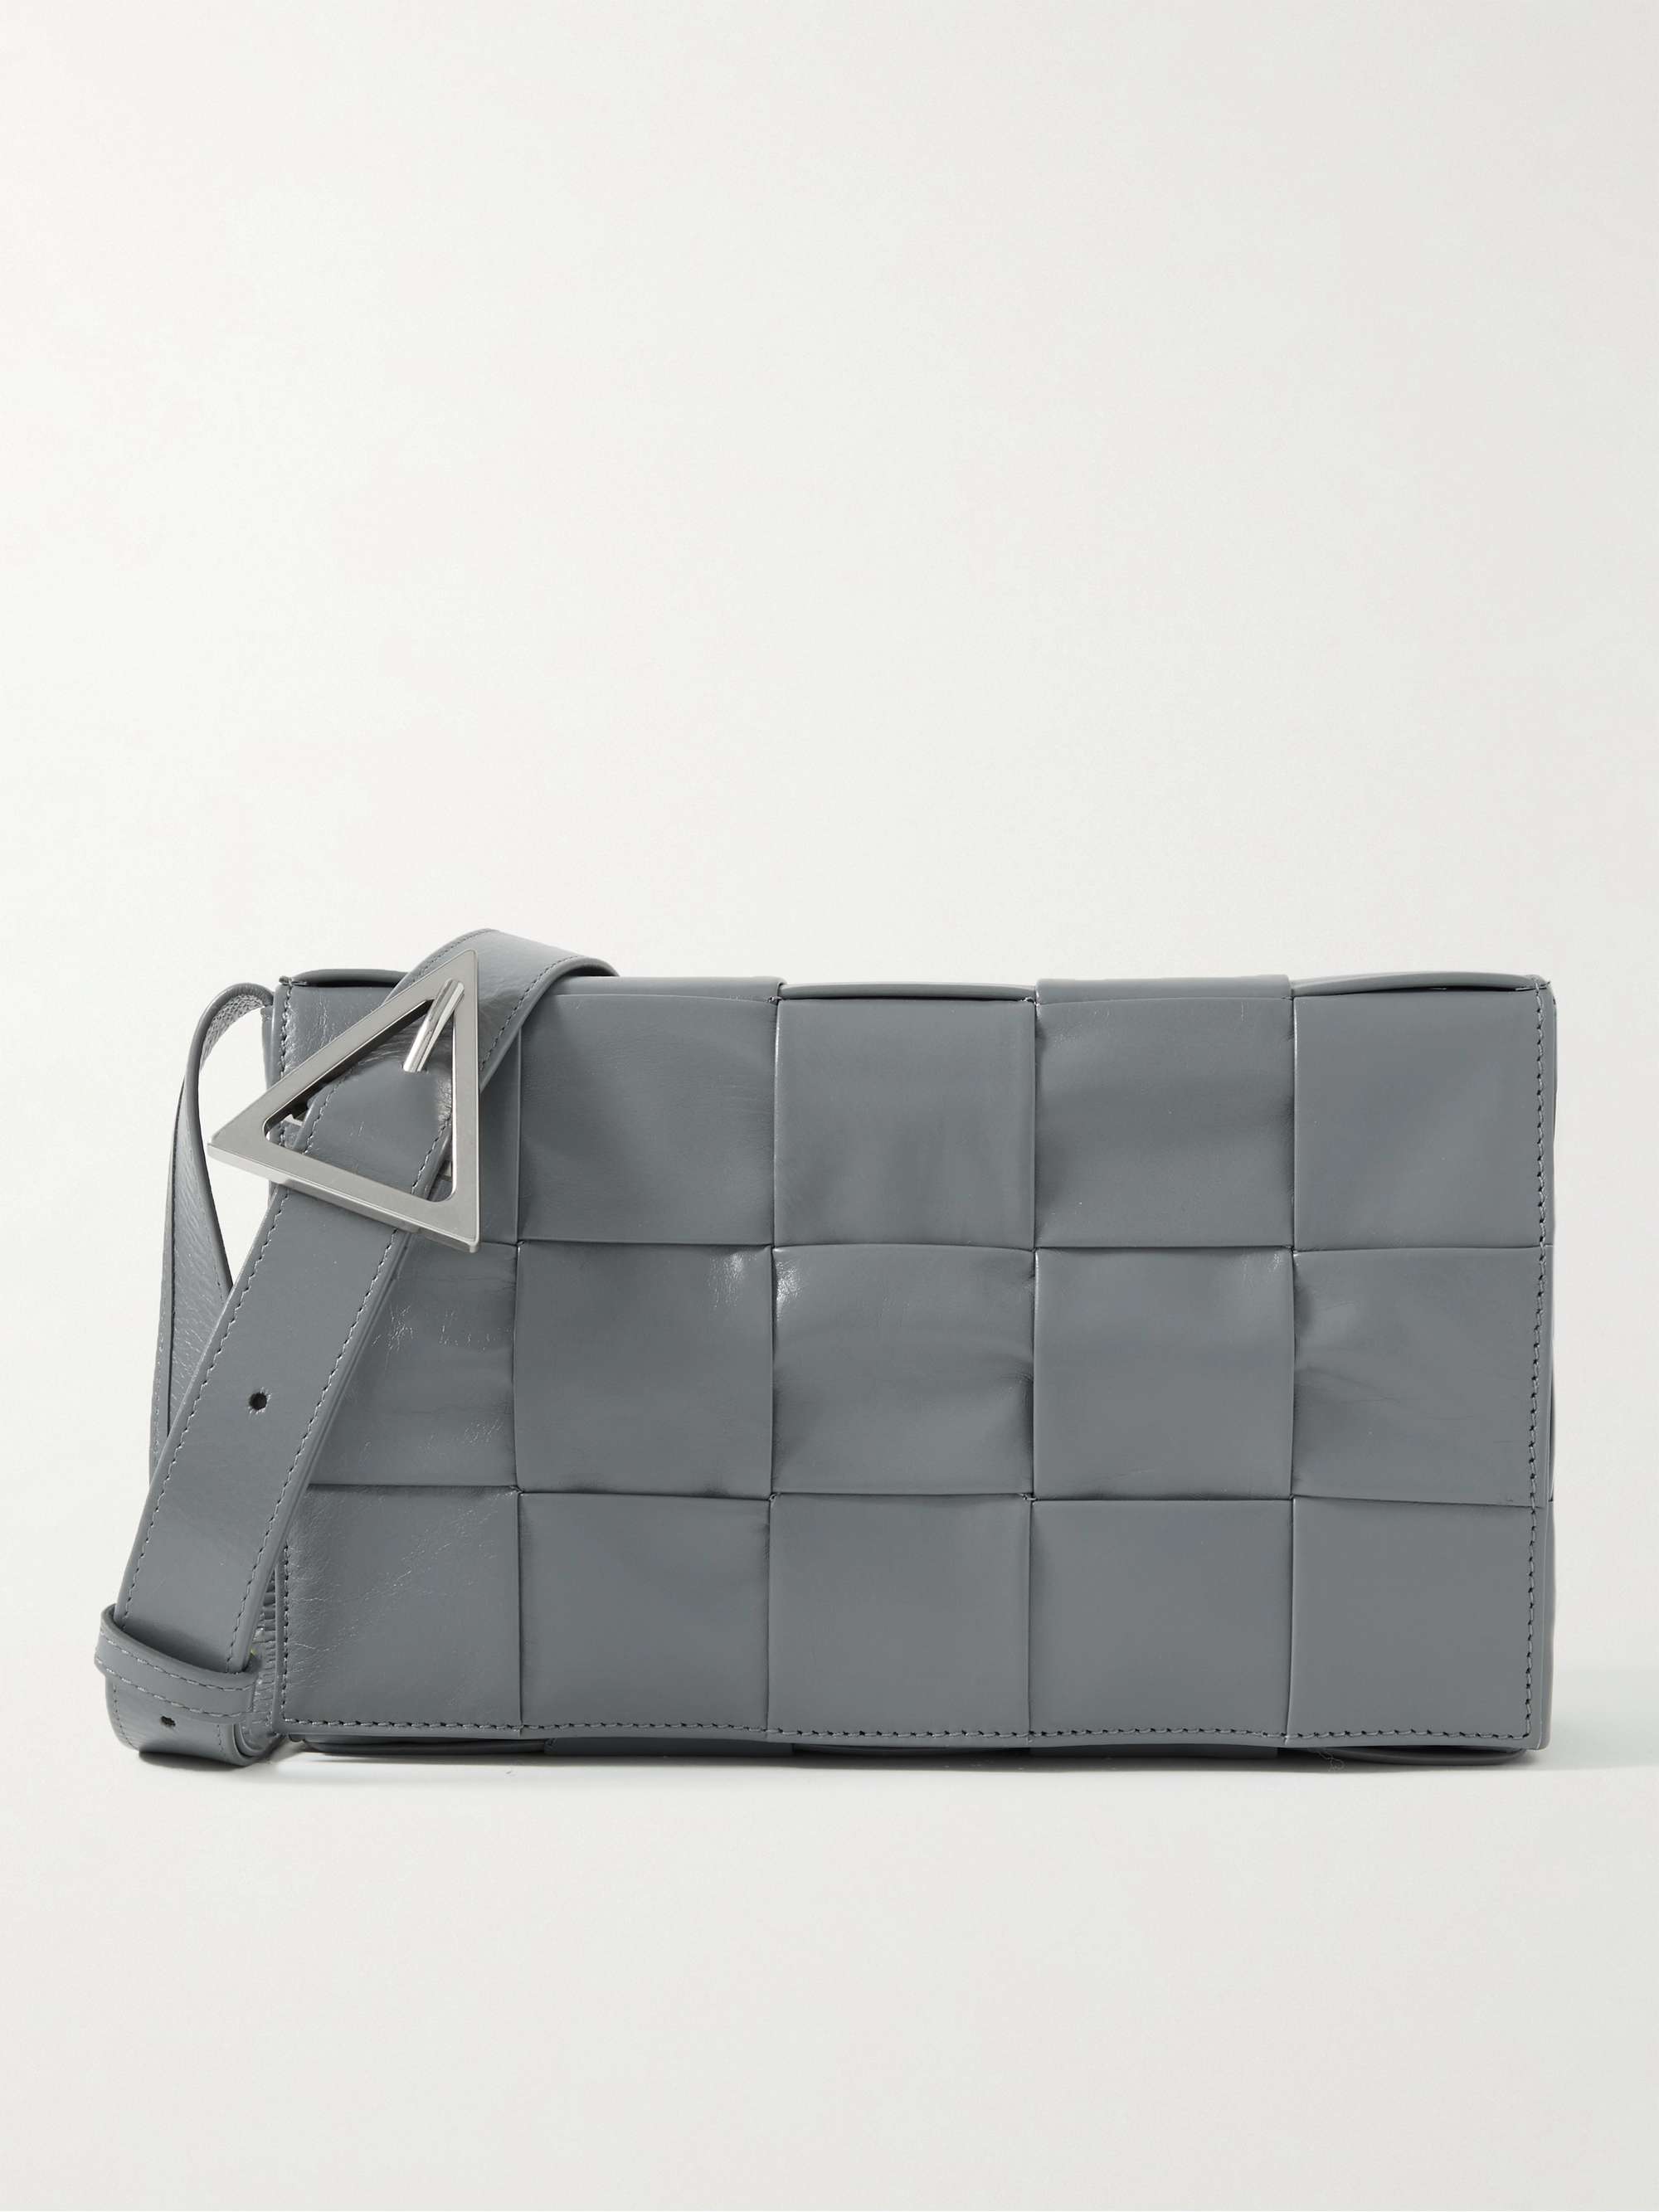 Bottega Veneta's Cassette Bag: What makes an it bag?